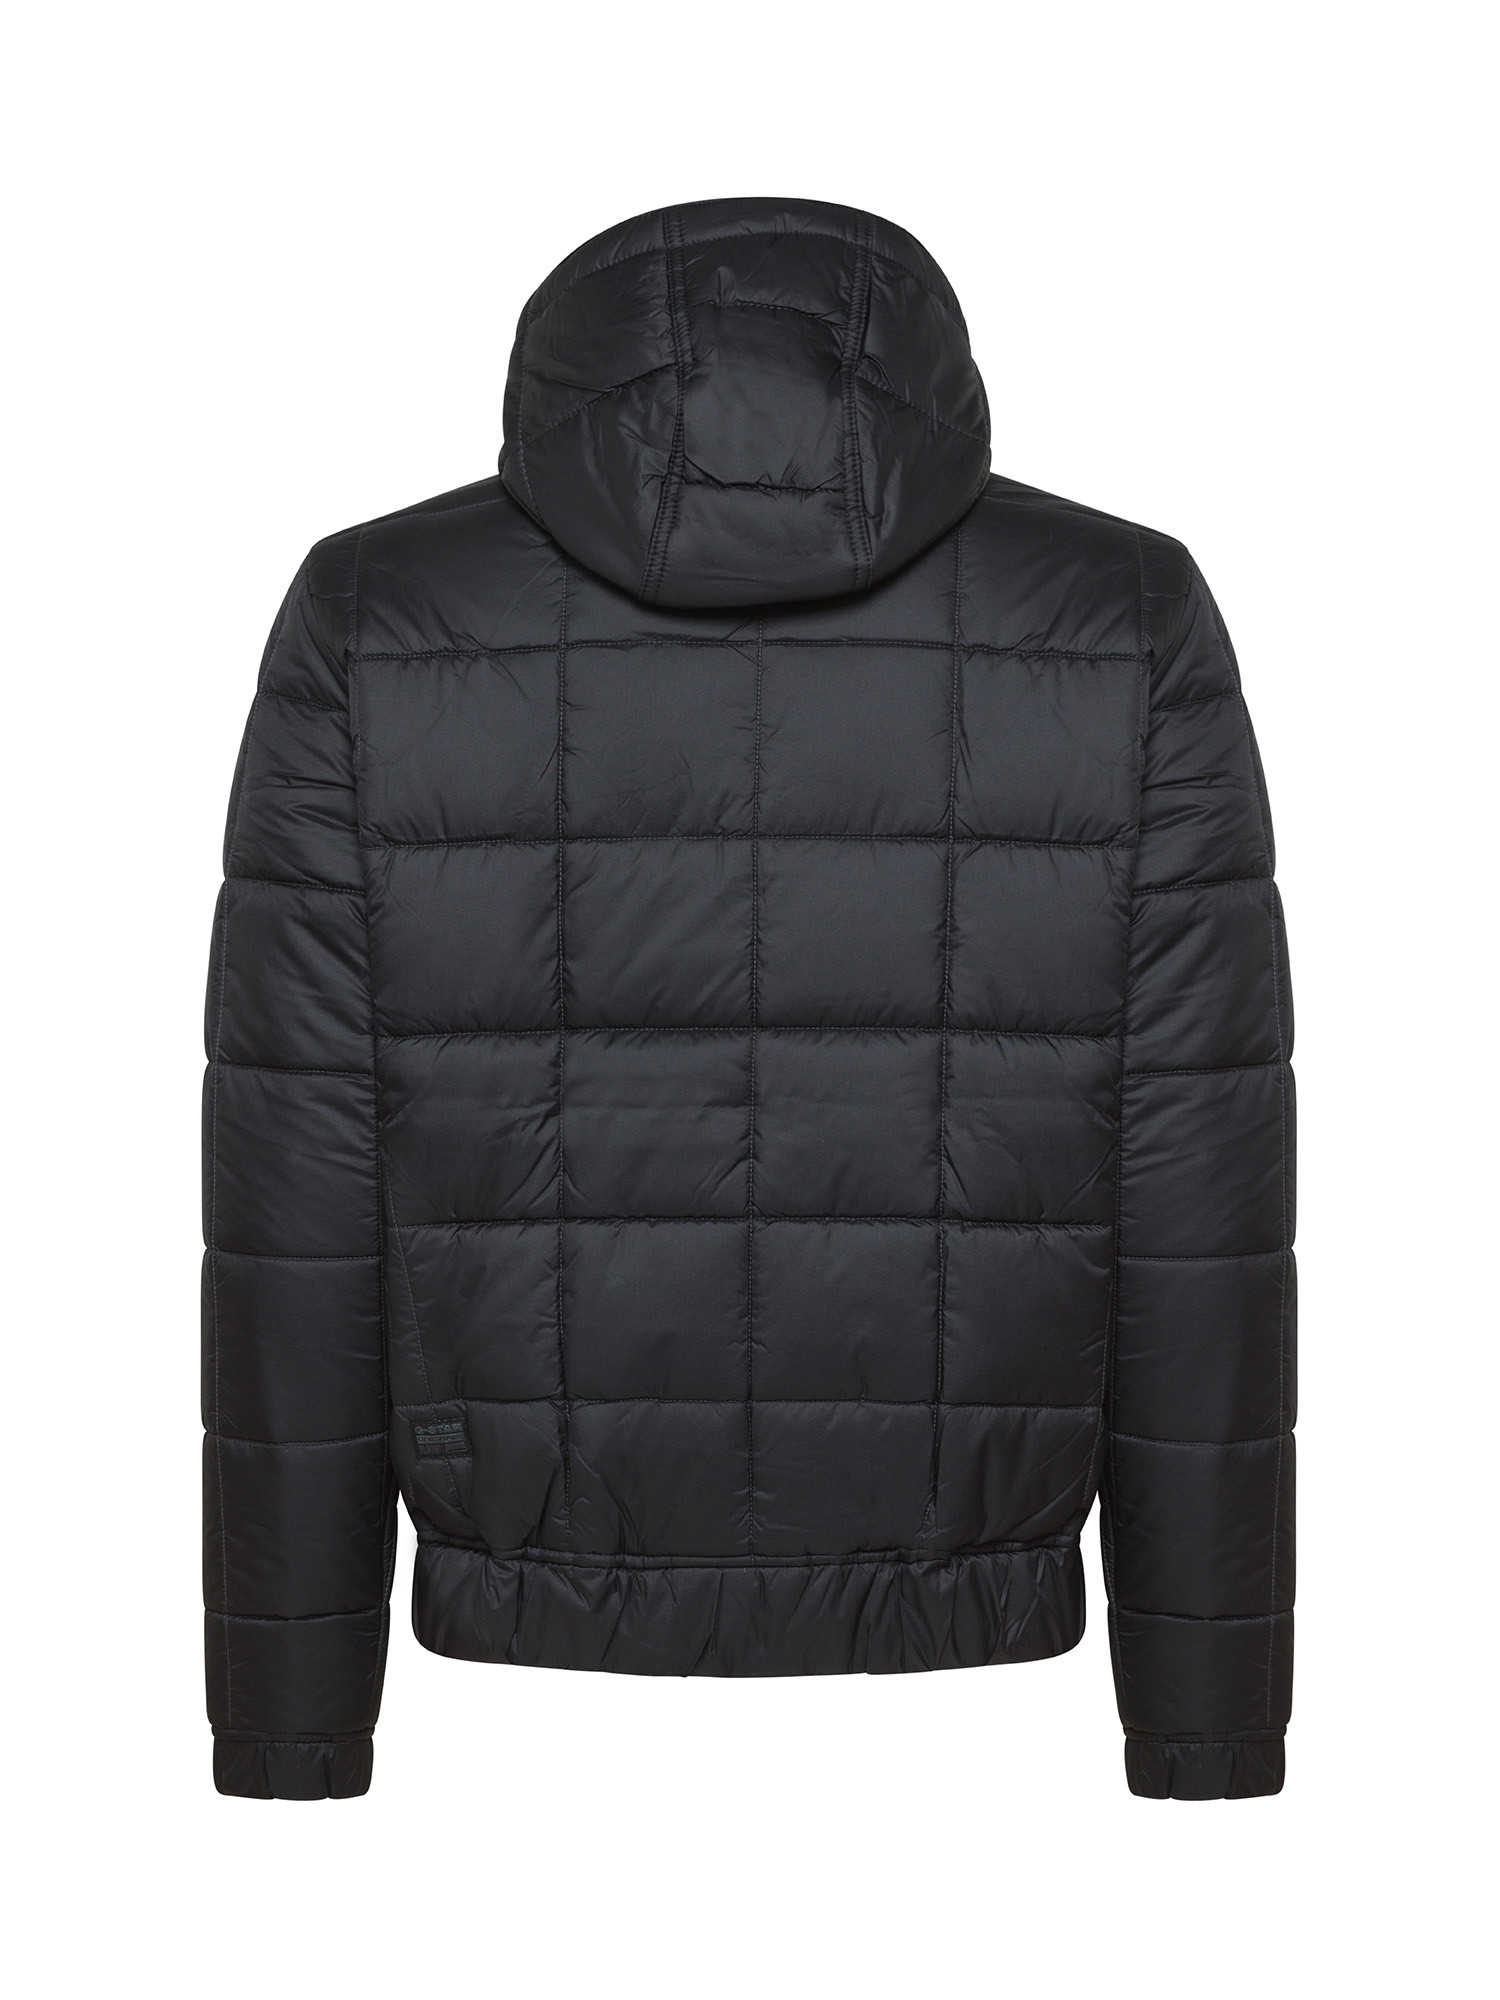 G-Star - Hooded down jacket, Black, large image number 1